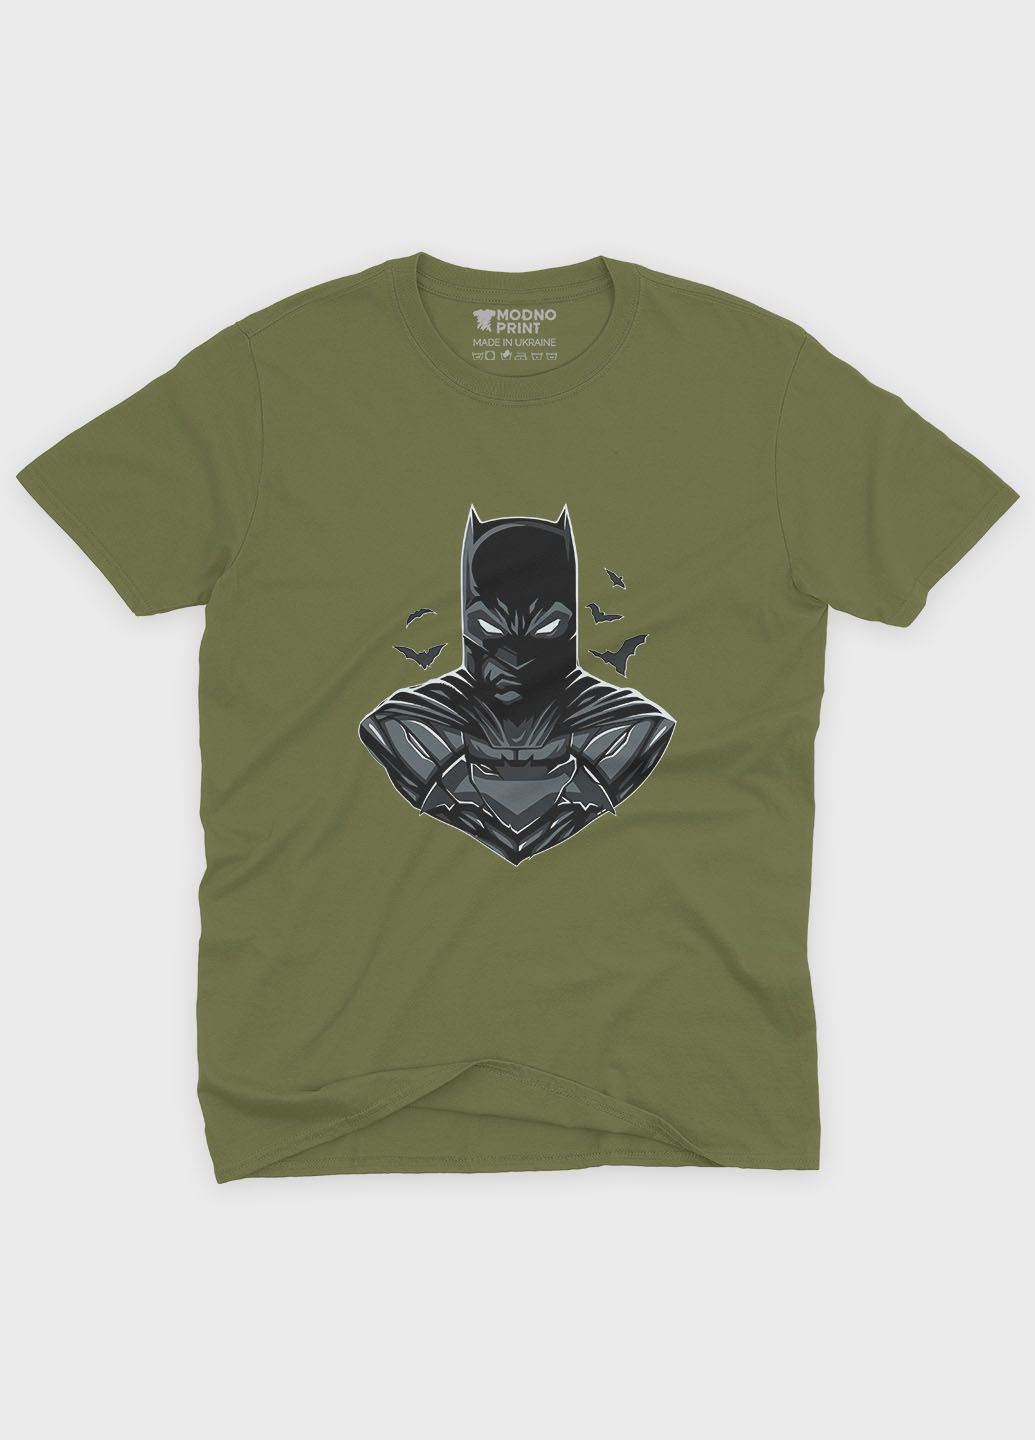 Хаки (оливковая) летняя мужская футболка с принтом супергероя - бэтмен (ts001-1-hgr-006-003-026-f) Modno